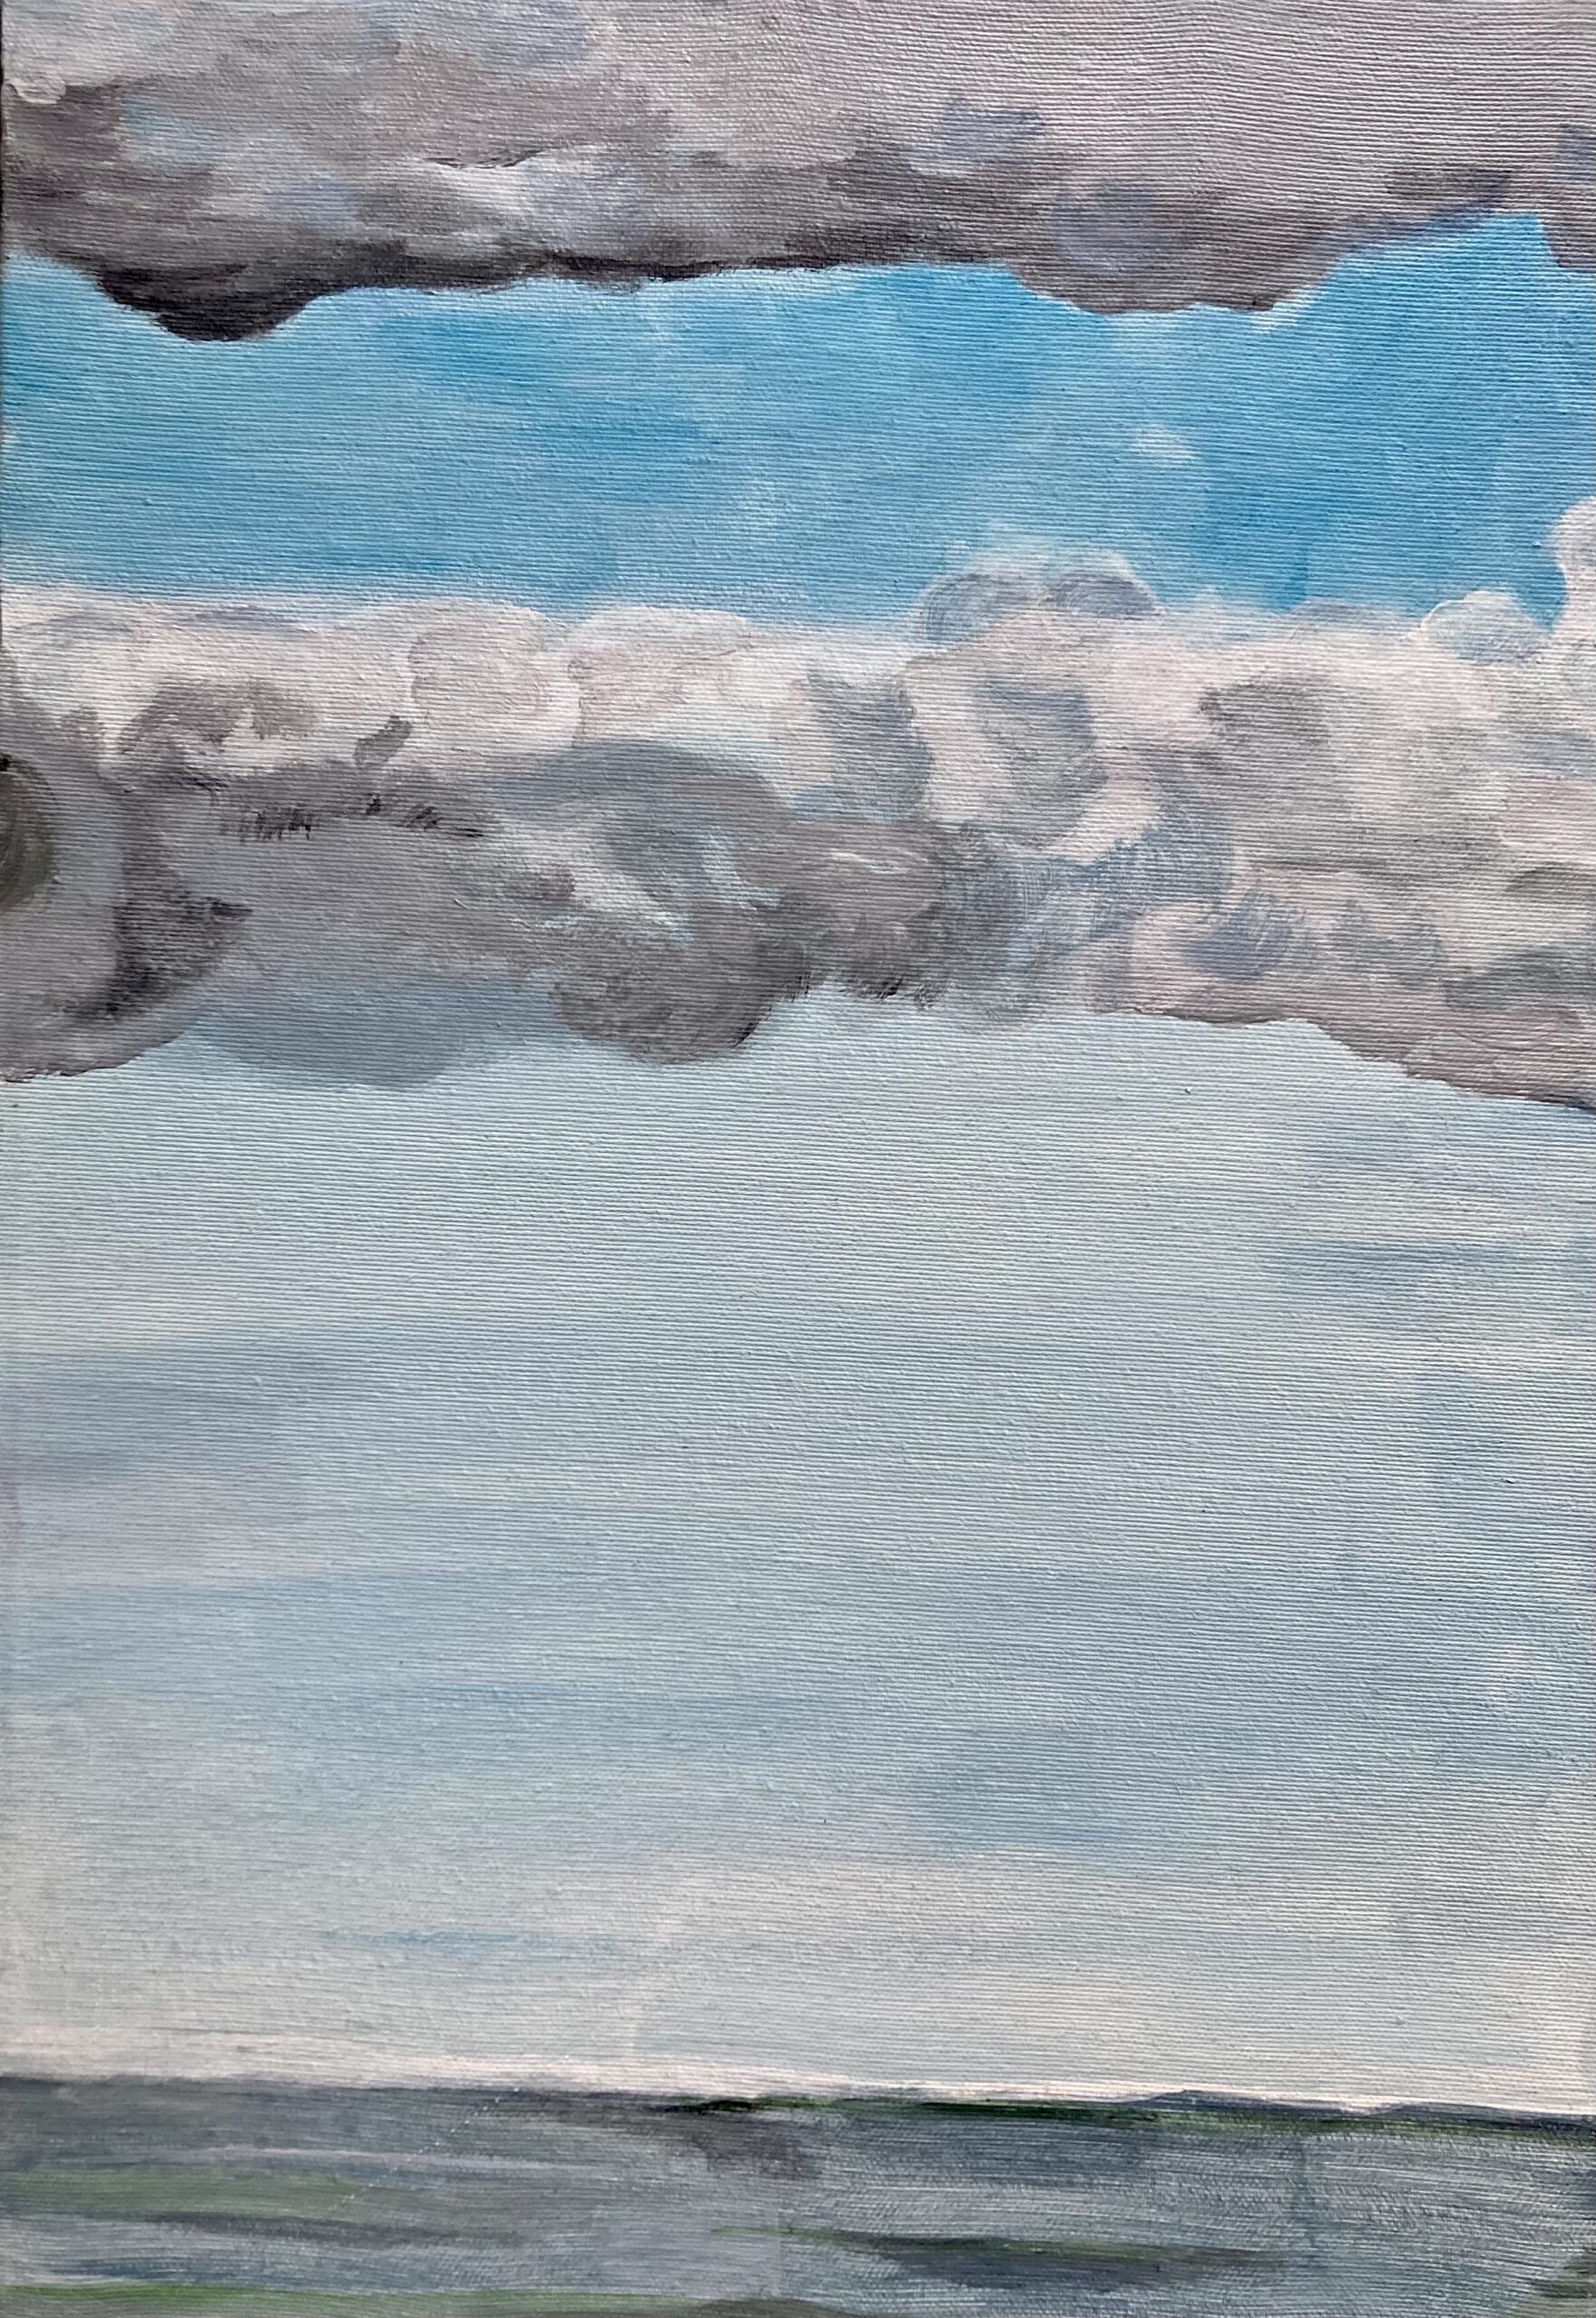 Wolken und Meer